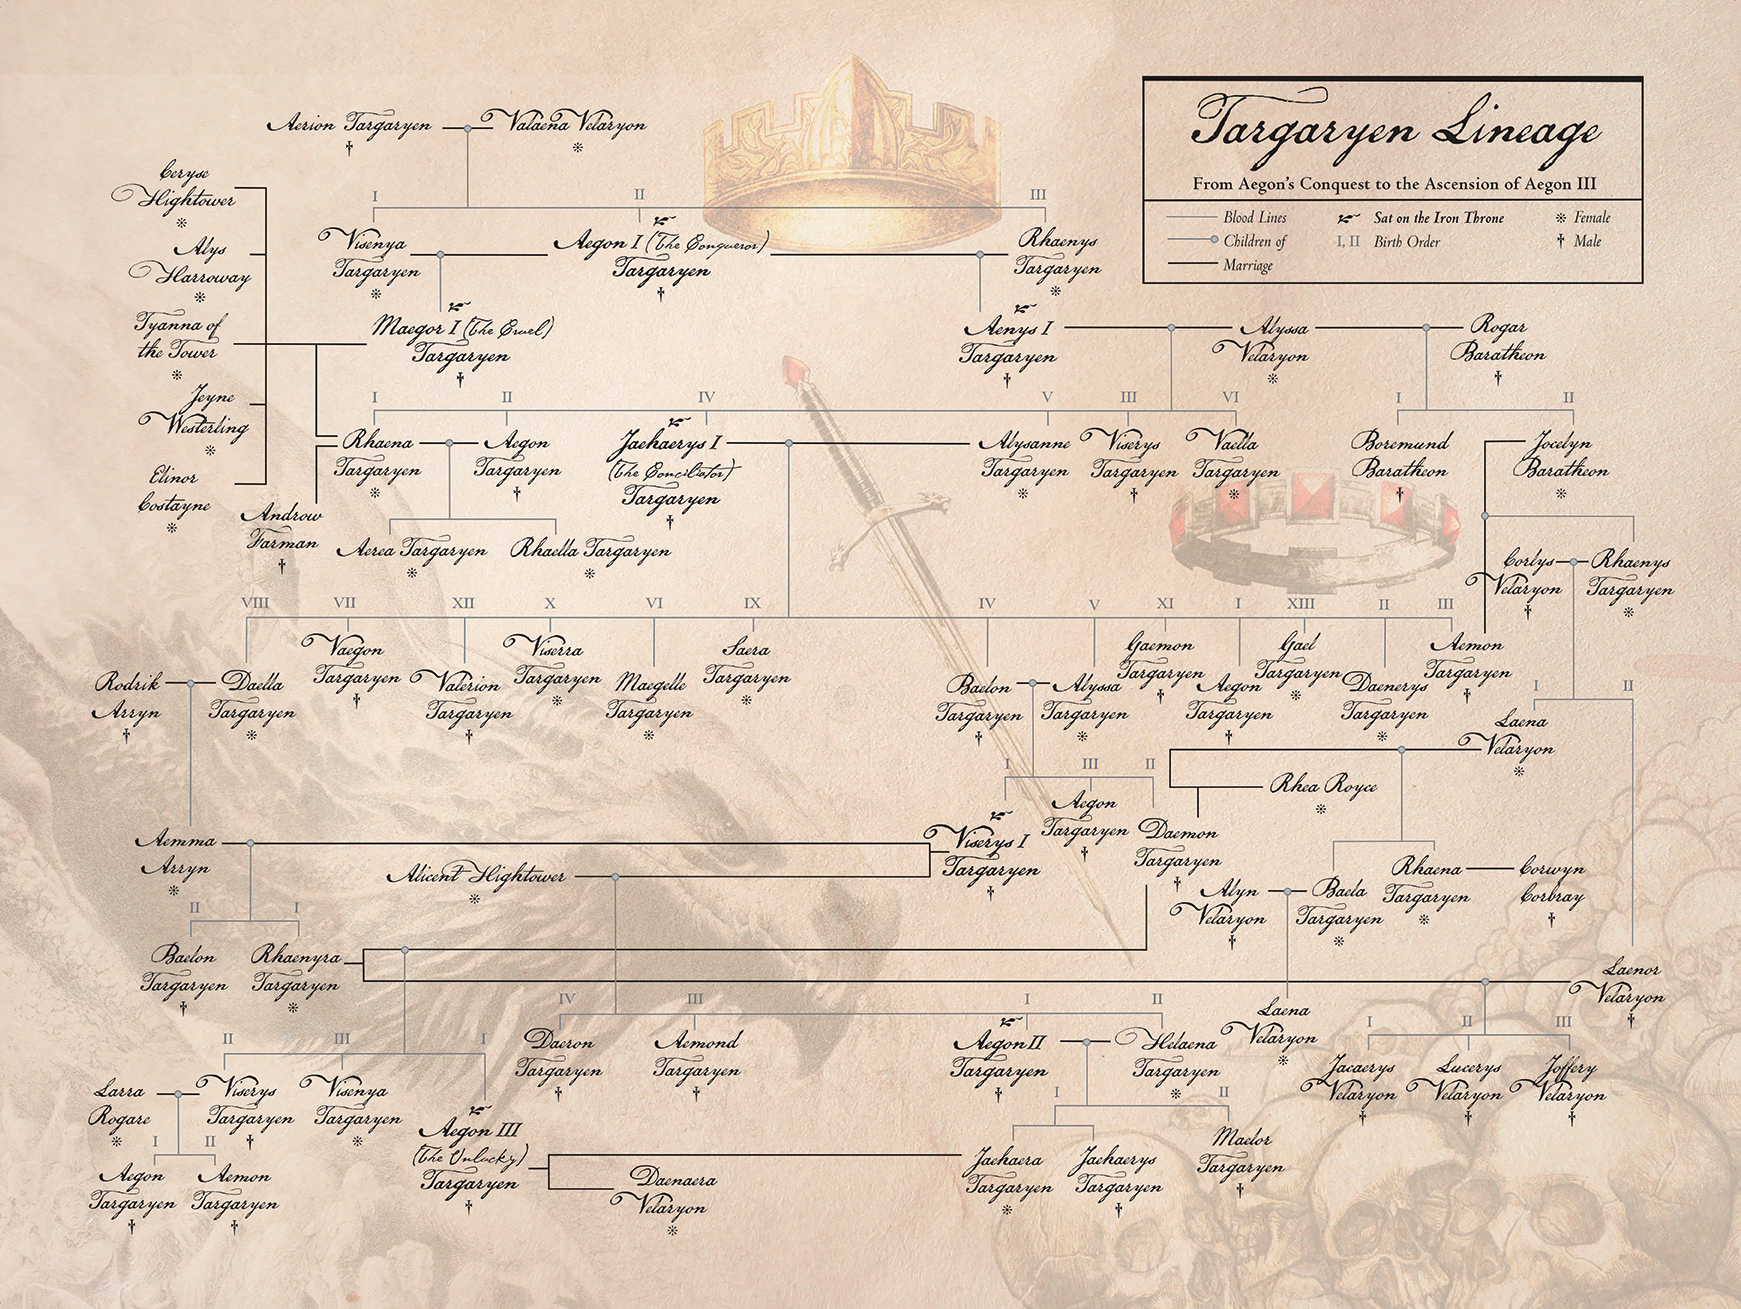 Confira a árvore genealógica da família Targaryen em “A Casa do